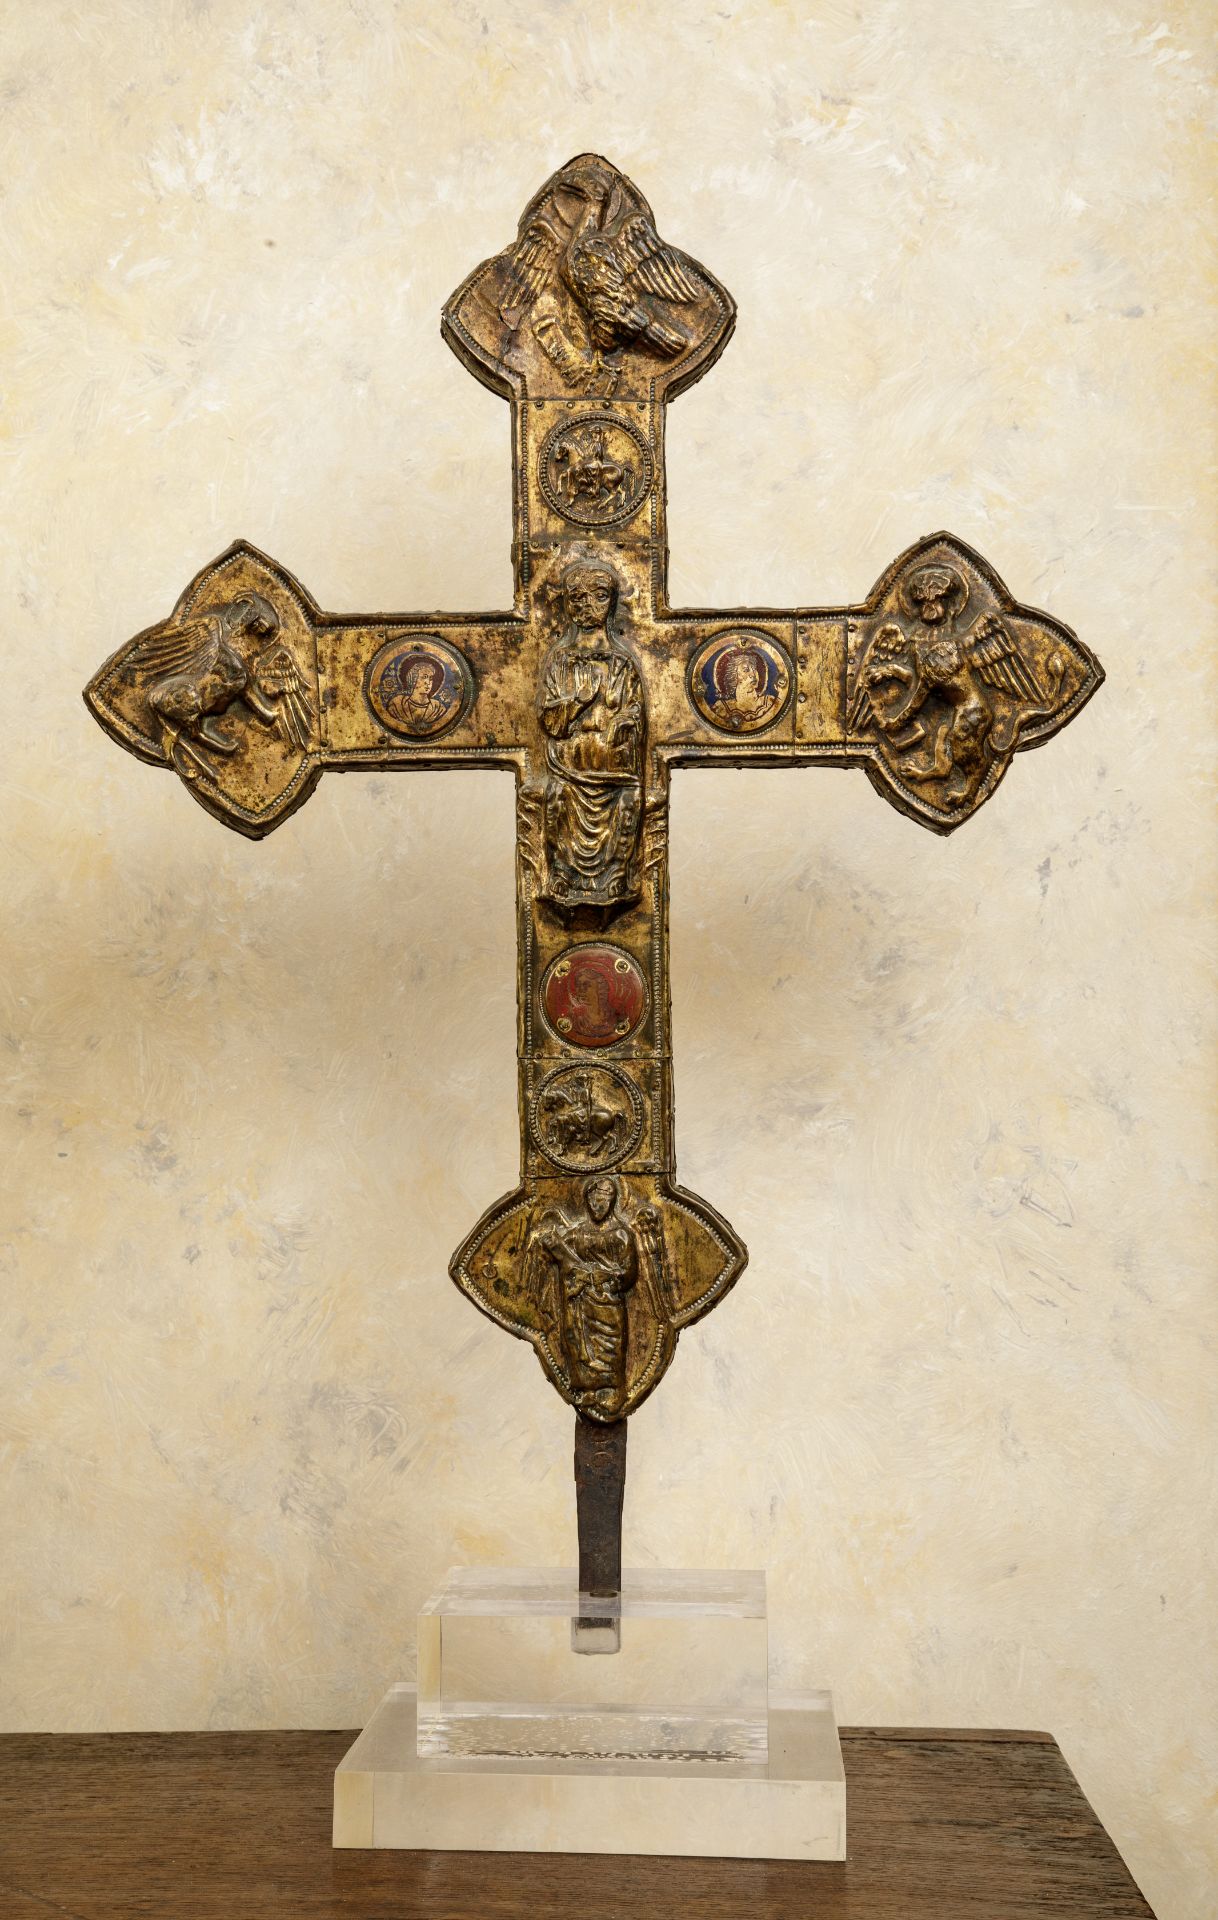 Croix de procession en cuivre Italie 14 eme siècle Ht 55cm x 39cm x 3cm Parfait état